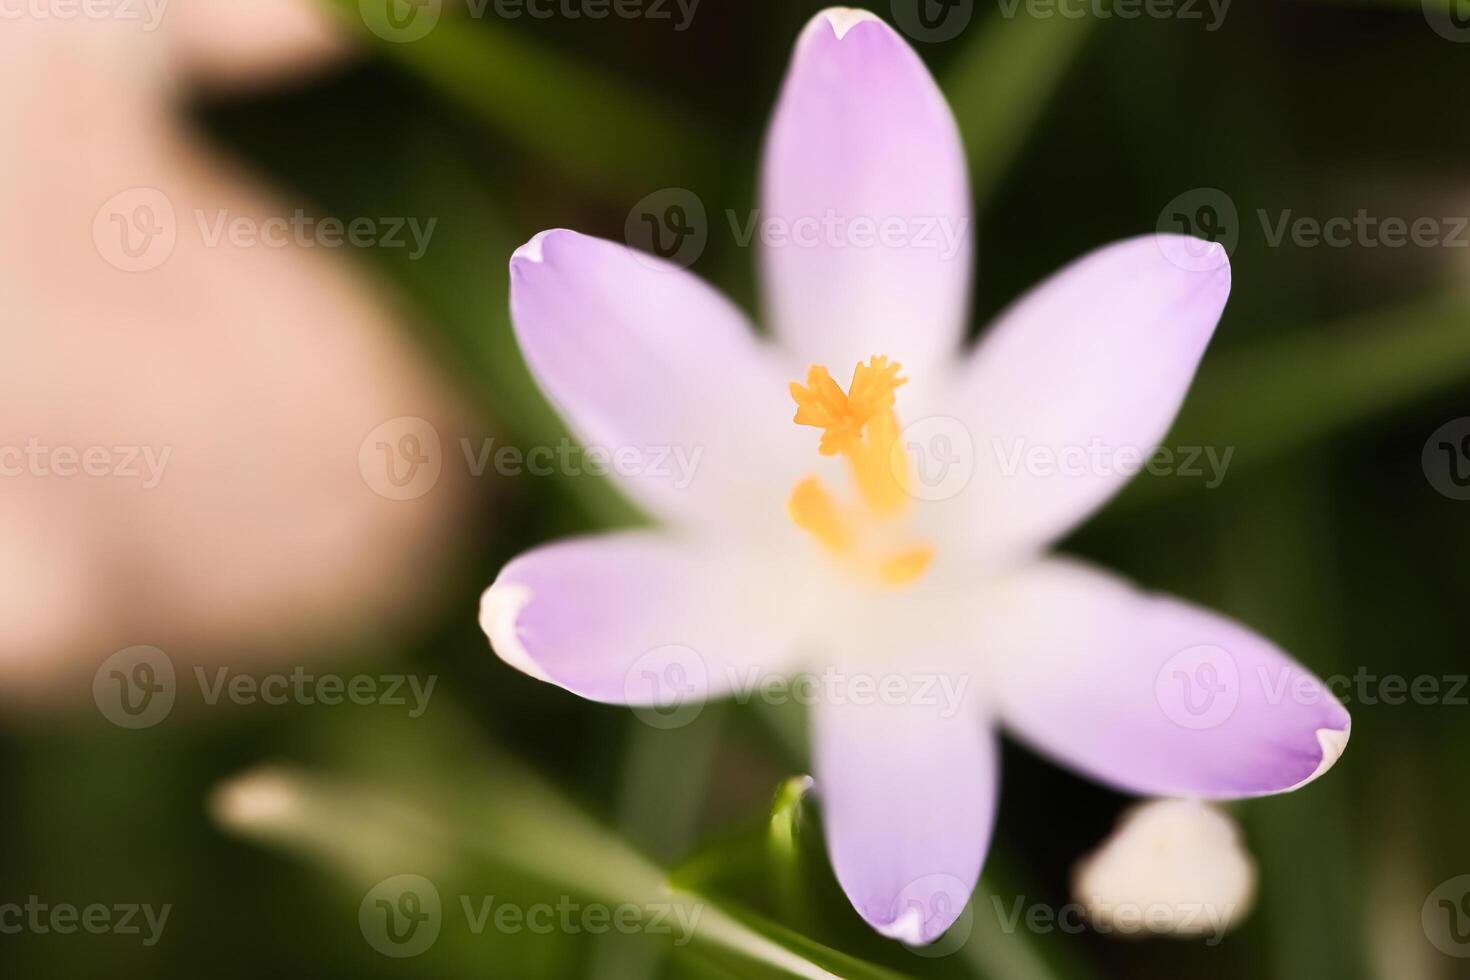 single krokus bloem subtiel afgebeeld in zacht warm licht. voorjaar bloemen foto